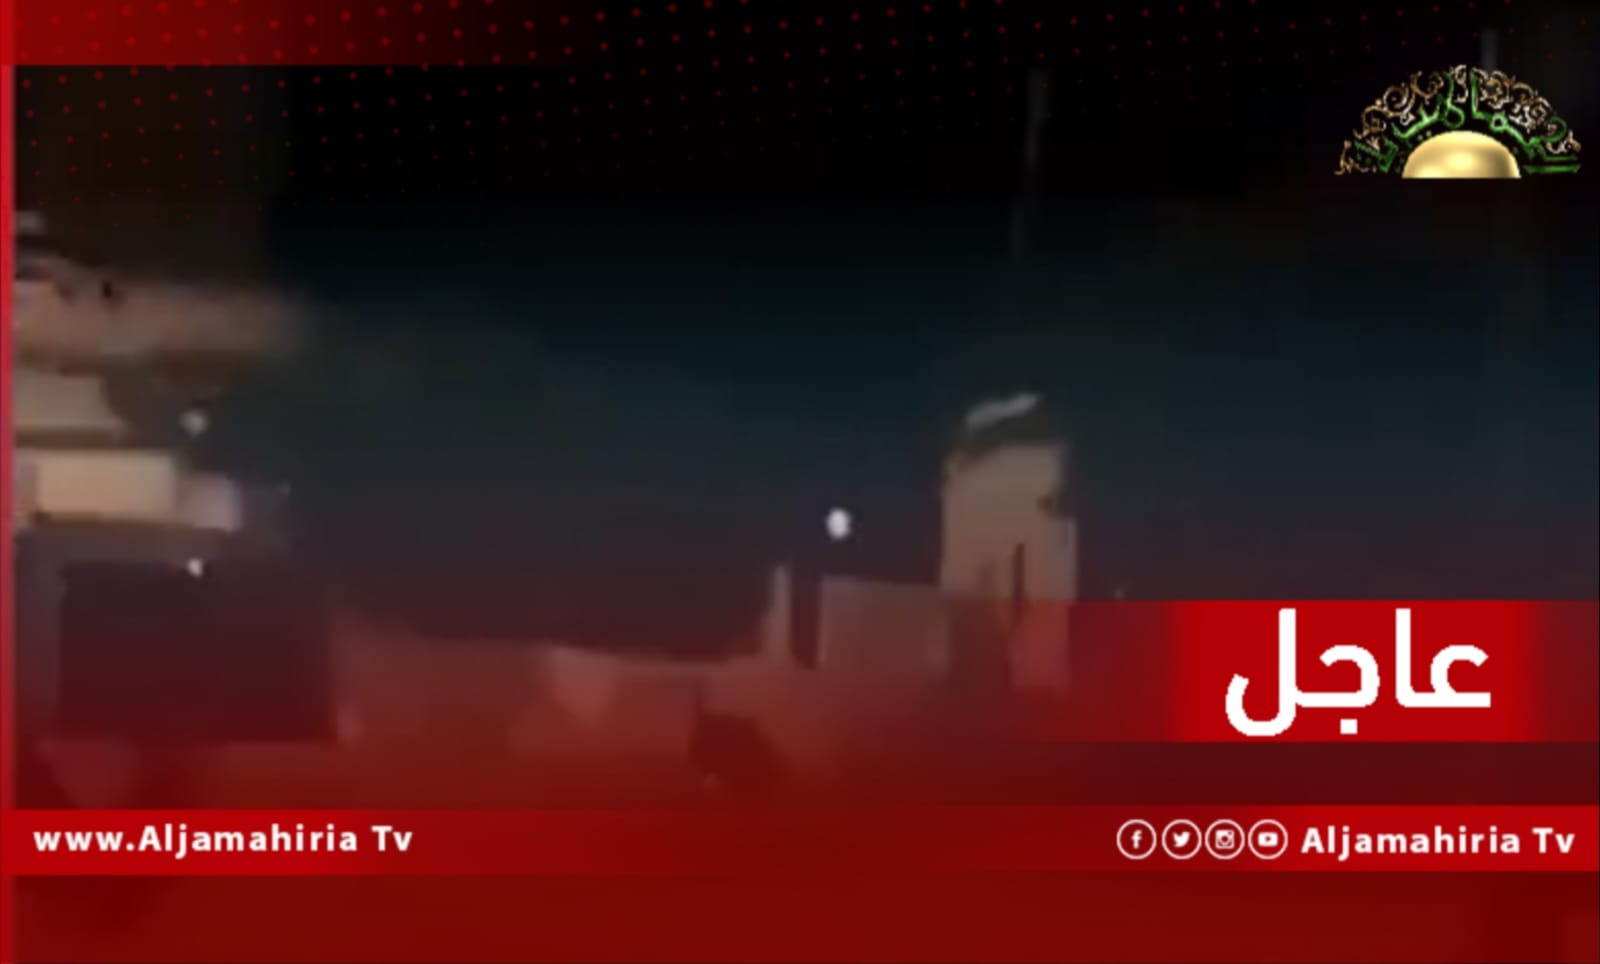 عاجل / شهود عيان: قوات تابعة لمدير إدارة الاستخبارات العسكرية المُقال أسامة الجويلي تسيطر على مقر صلاح رحومة بالقرب من "شيل" في طرابلس